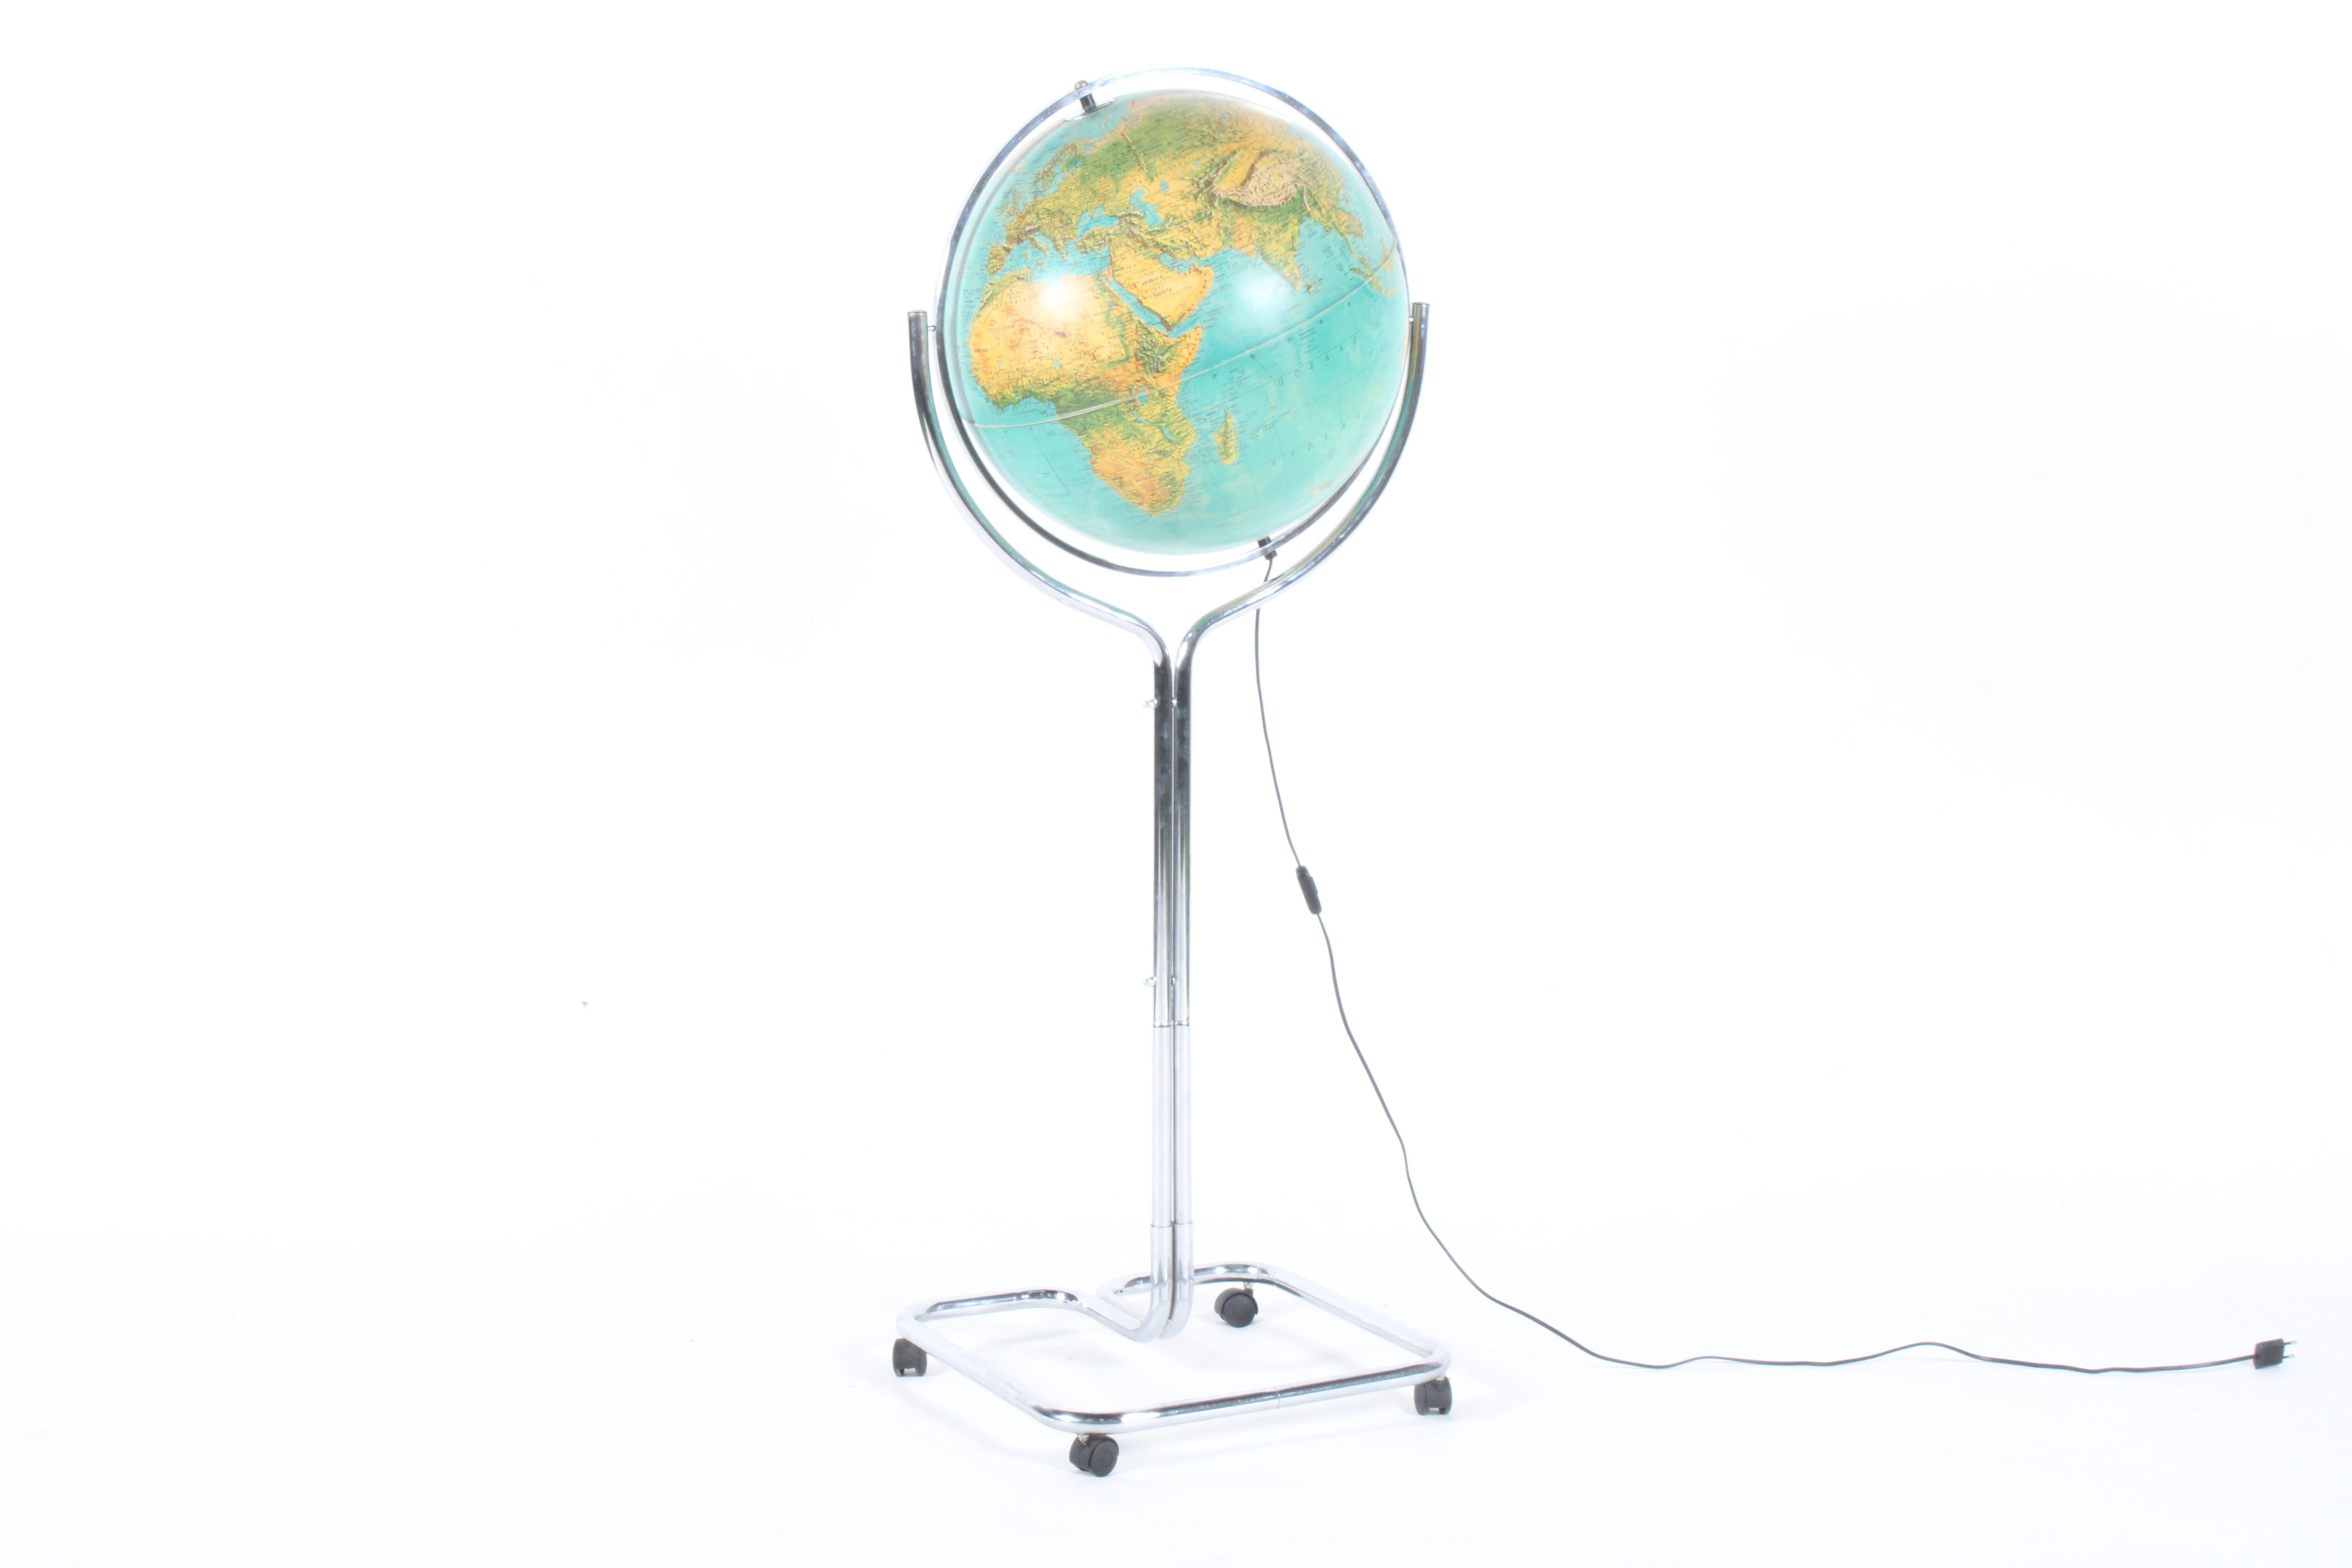 Superbe globe italien autoportant par Ricoscope Florence, livraison gratuite 9